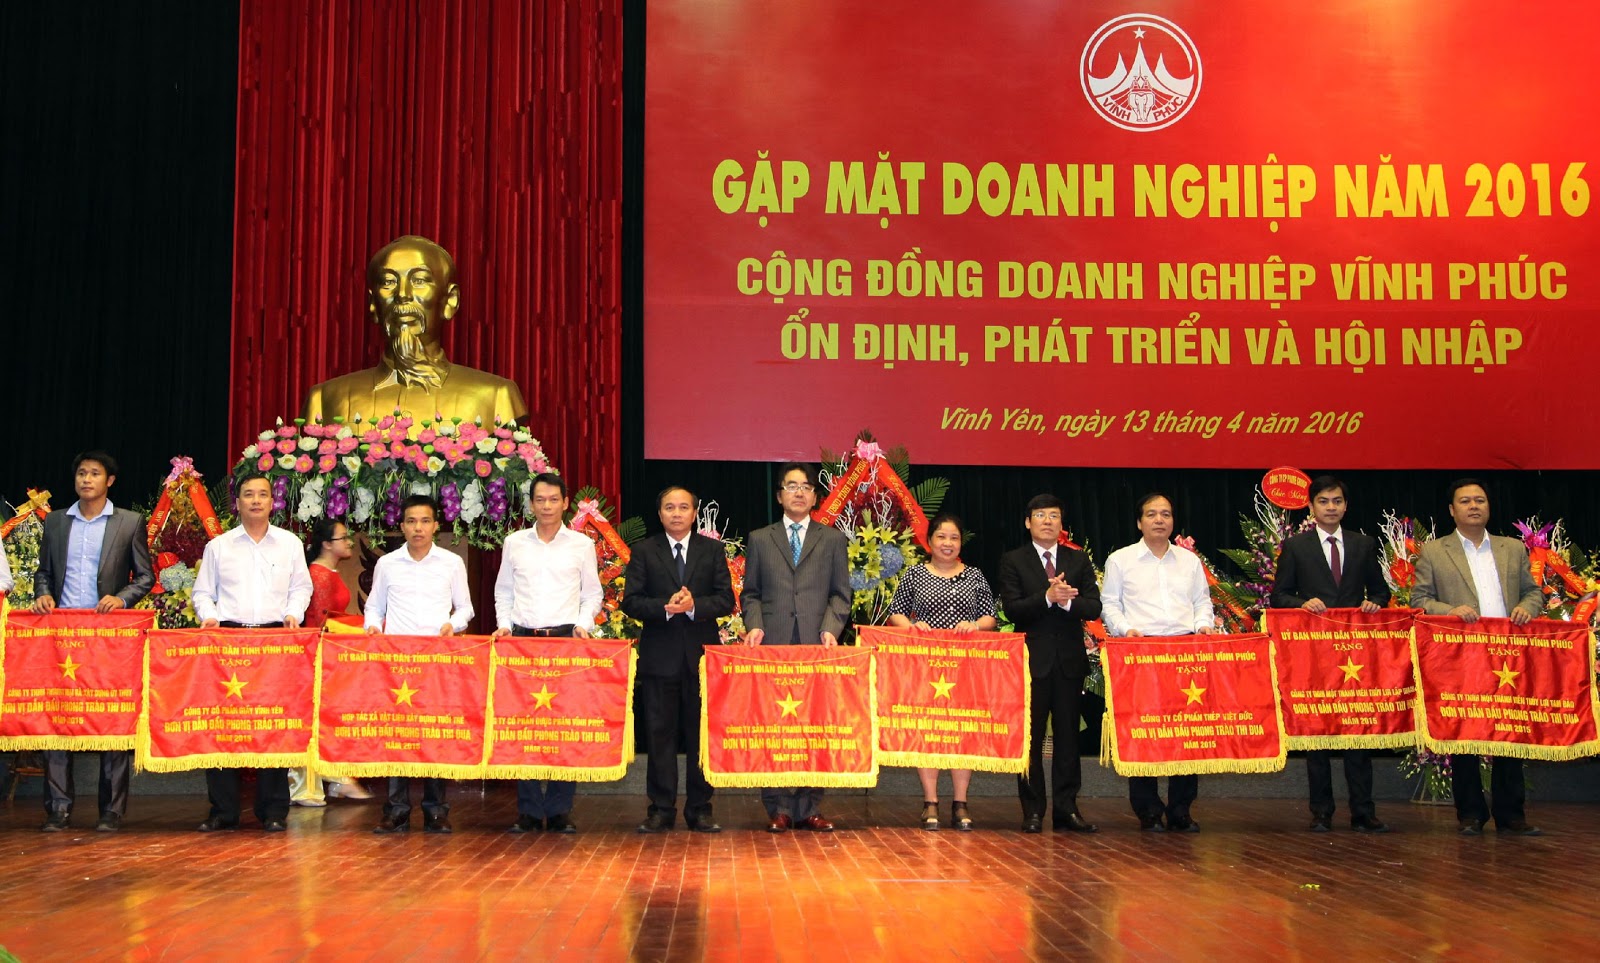 Thép Việt Đức được nhận cờ thi đua xuất sắc của UBND tỉnh Vĩnh Phúc và Bằng khen của VCCI